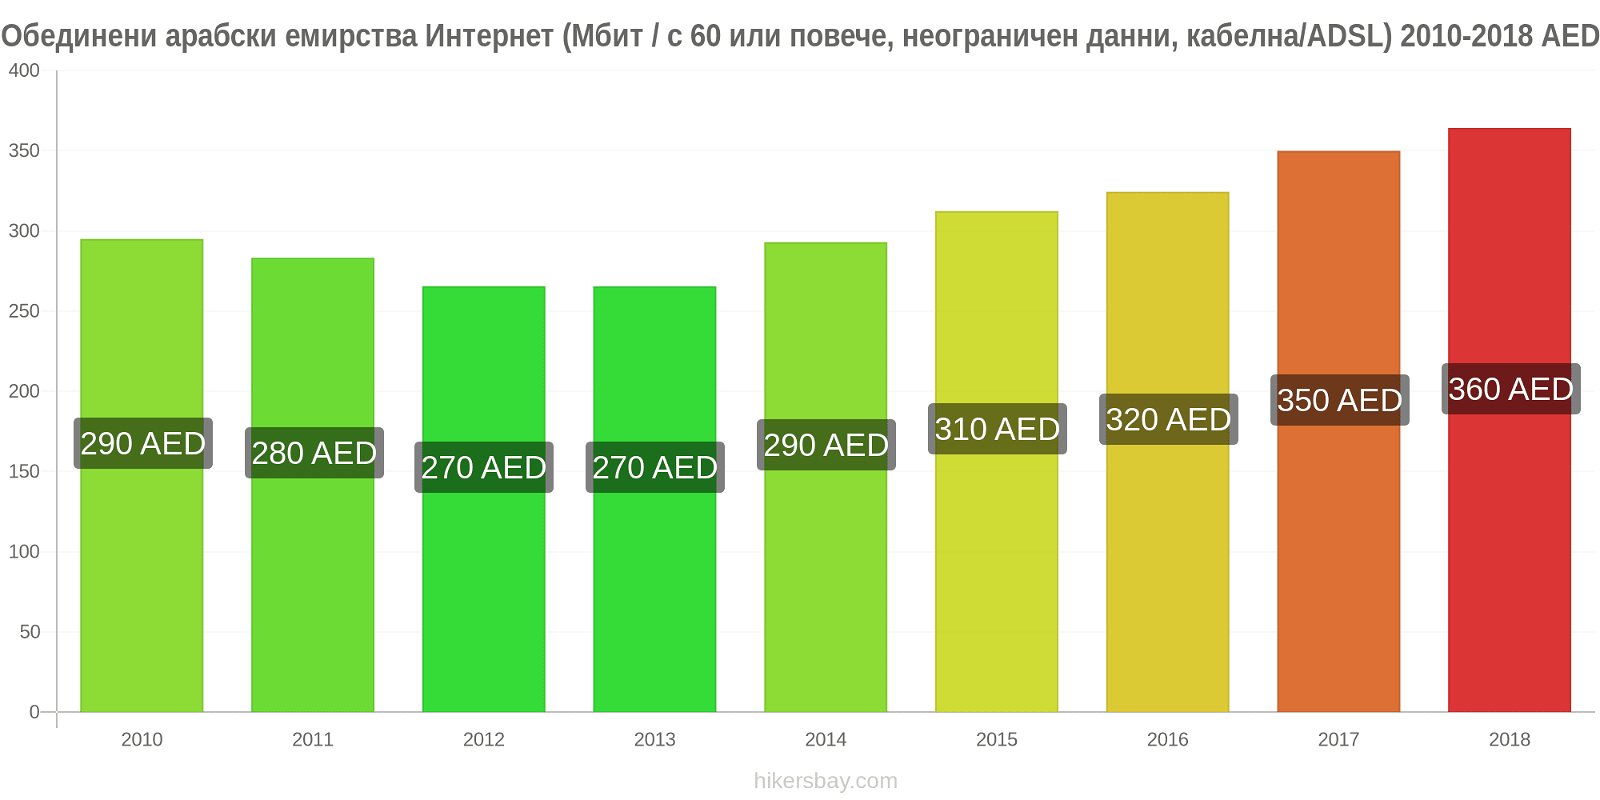 Обединени арабски емирства промени в цените Интернет (60 Mbps или повече, неограничени данни, кабел/ADSL) hikersbay.com